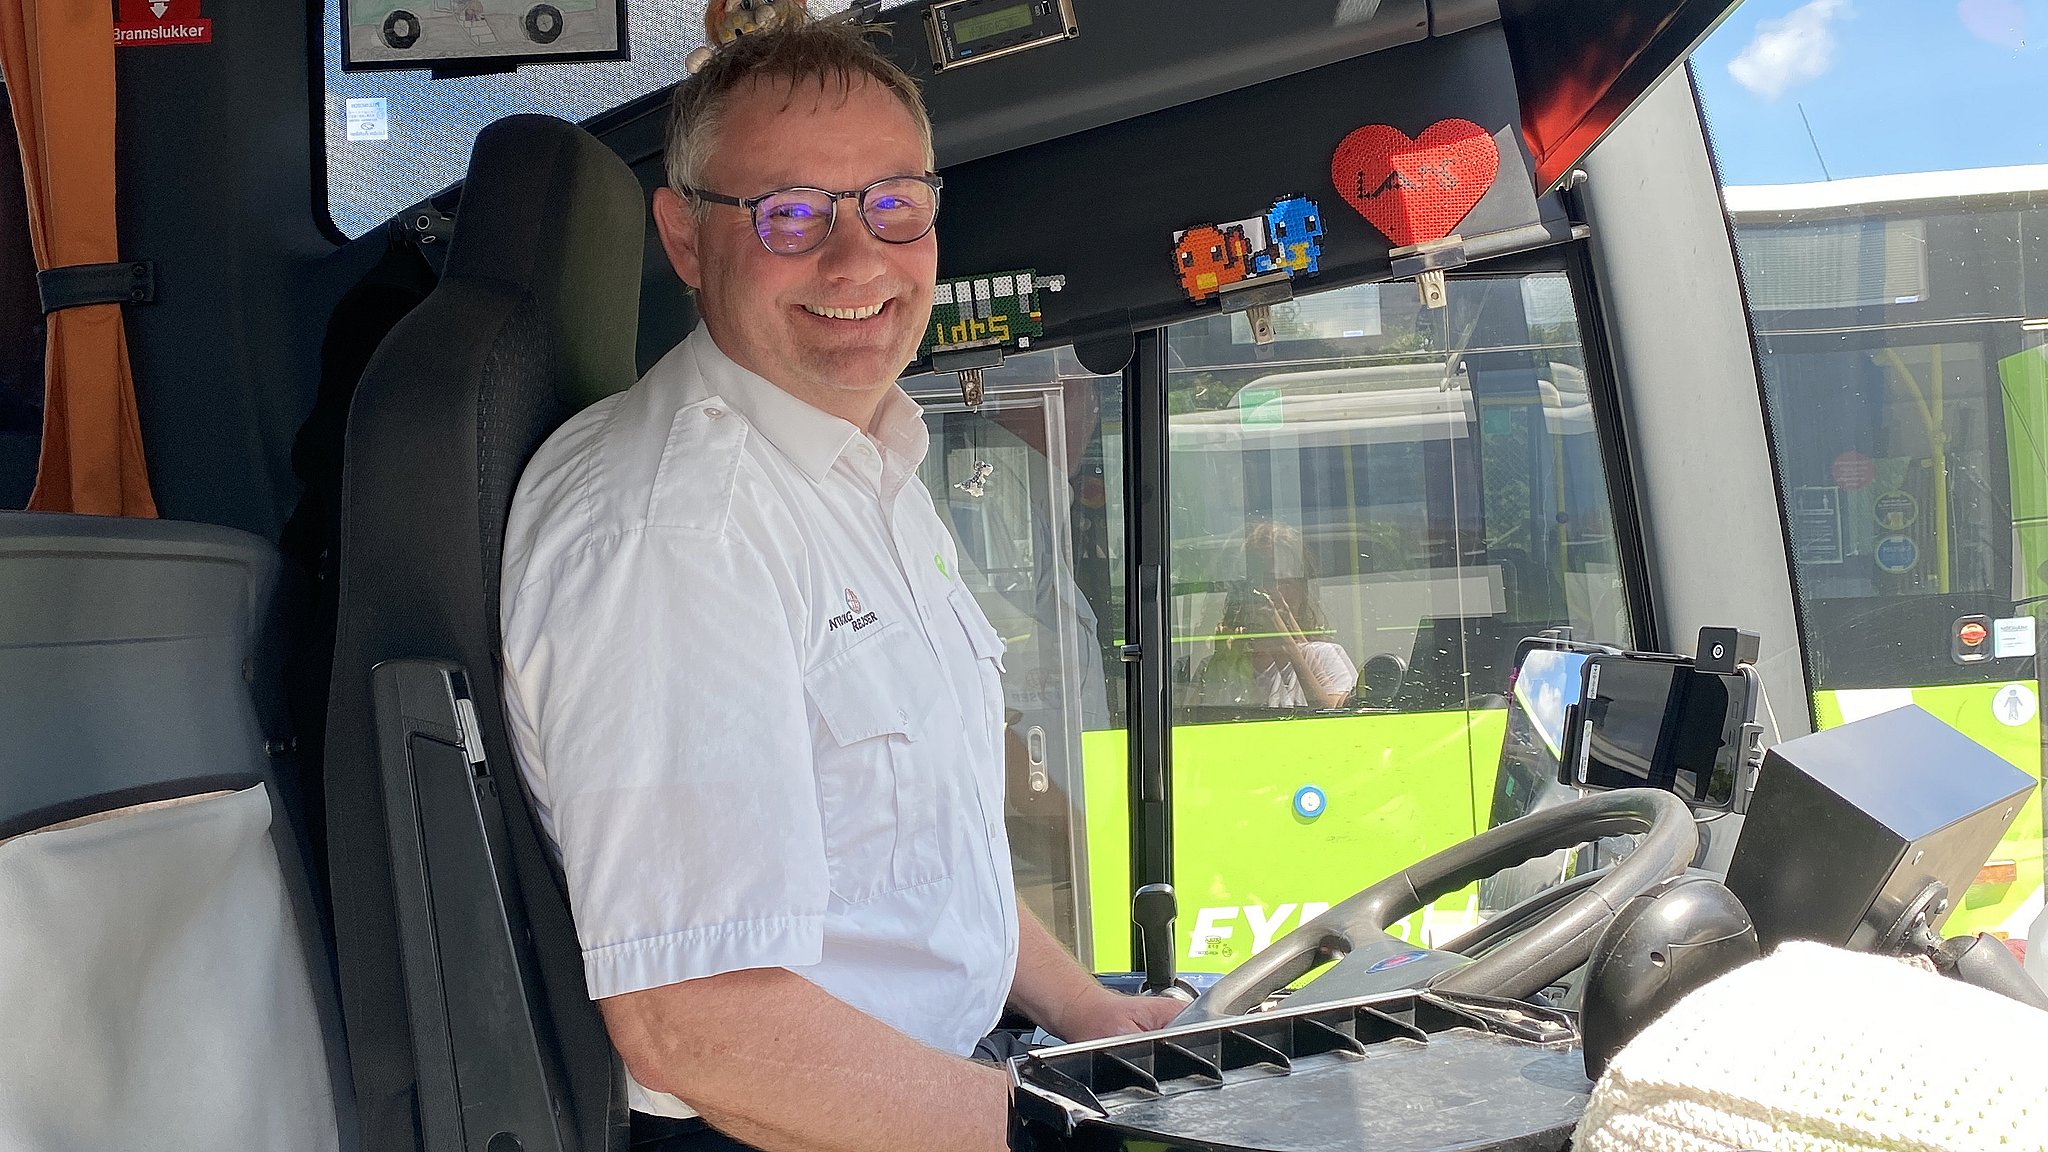 Lars-buschauffør har kørt bus i 26 år: - Han er en meget person, der betyder meget os alle | TV2 Fyn